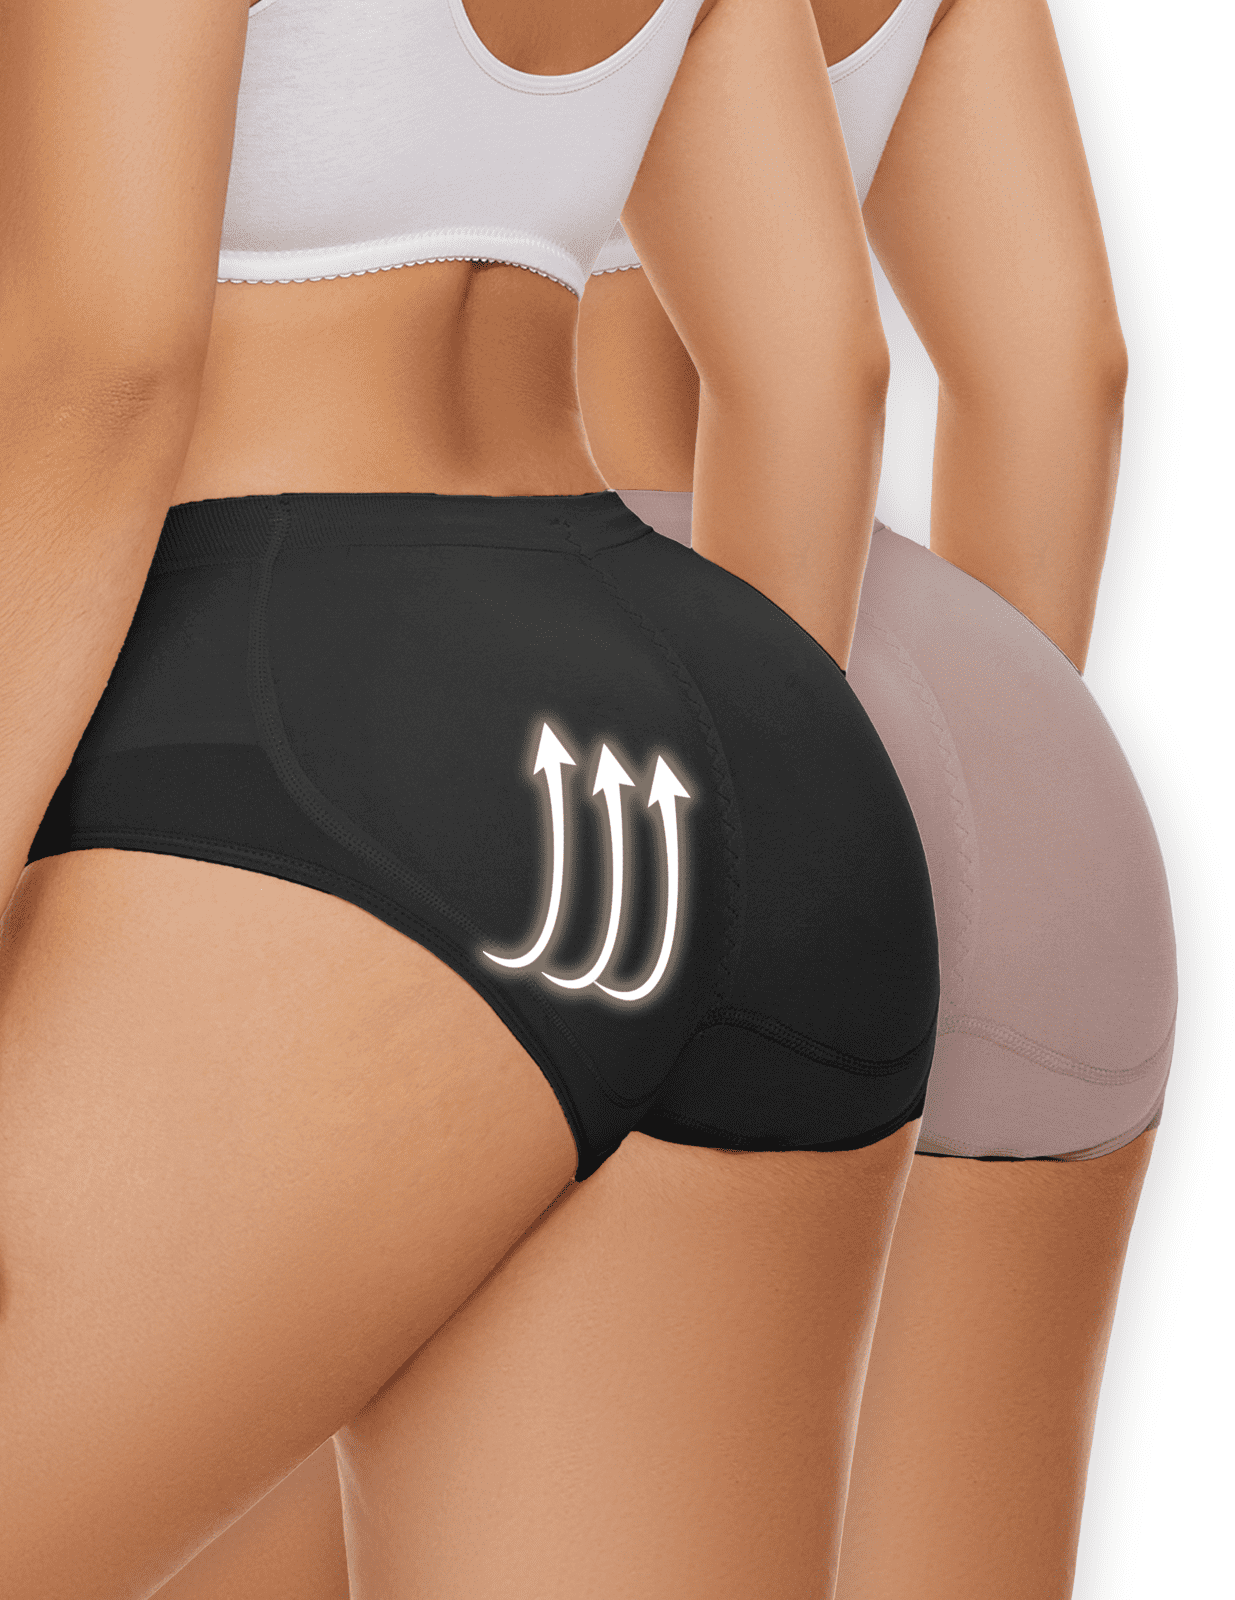 MISS MOLY Women Padded Butt Lifter Panties High Waist Butt Enhancer Underwear  Booty Pop Lace Shapewear Shorts,Beige 3XL at  Women's Clothing store